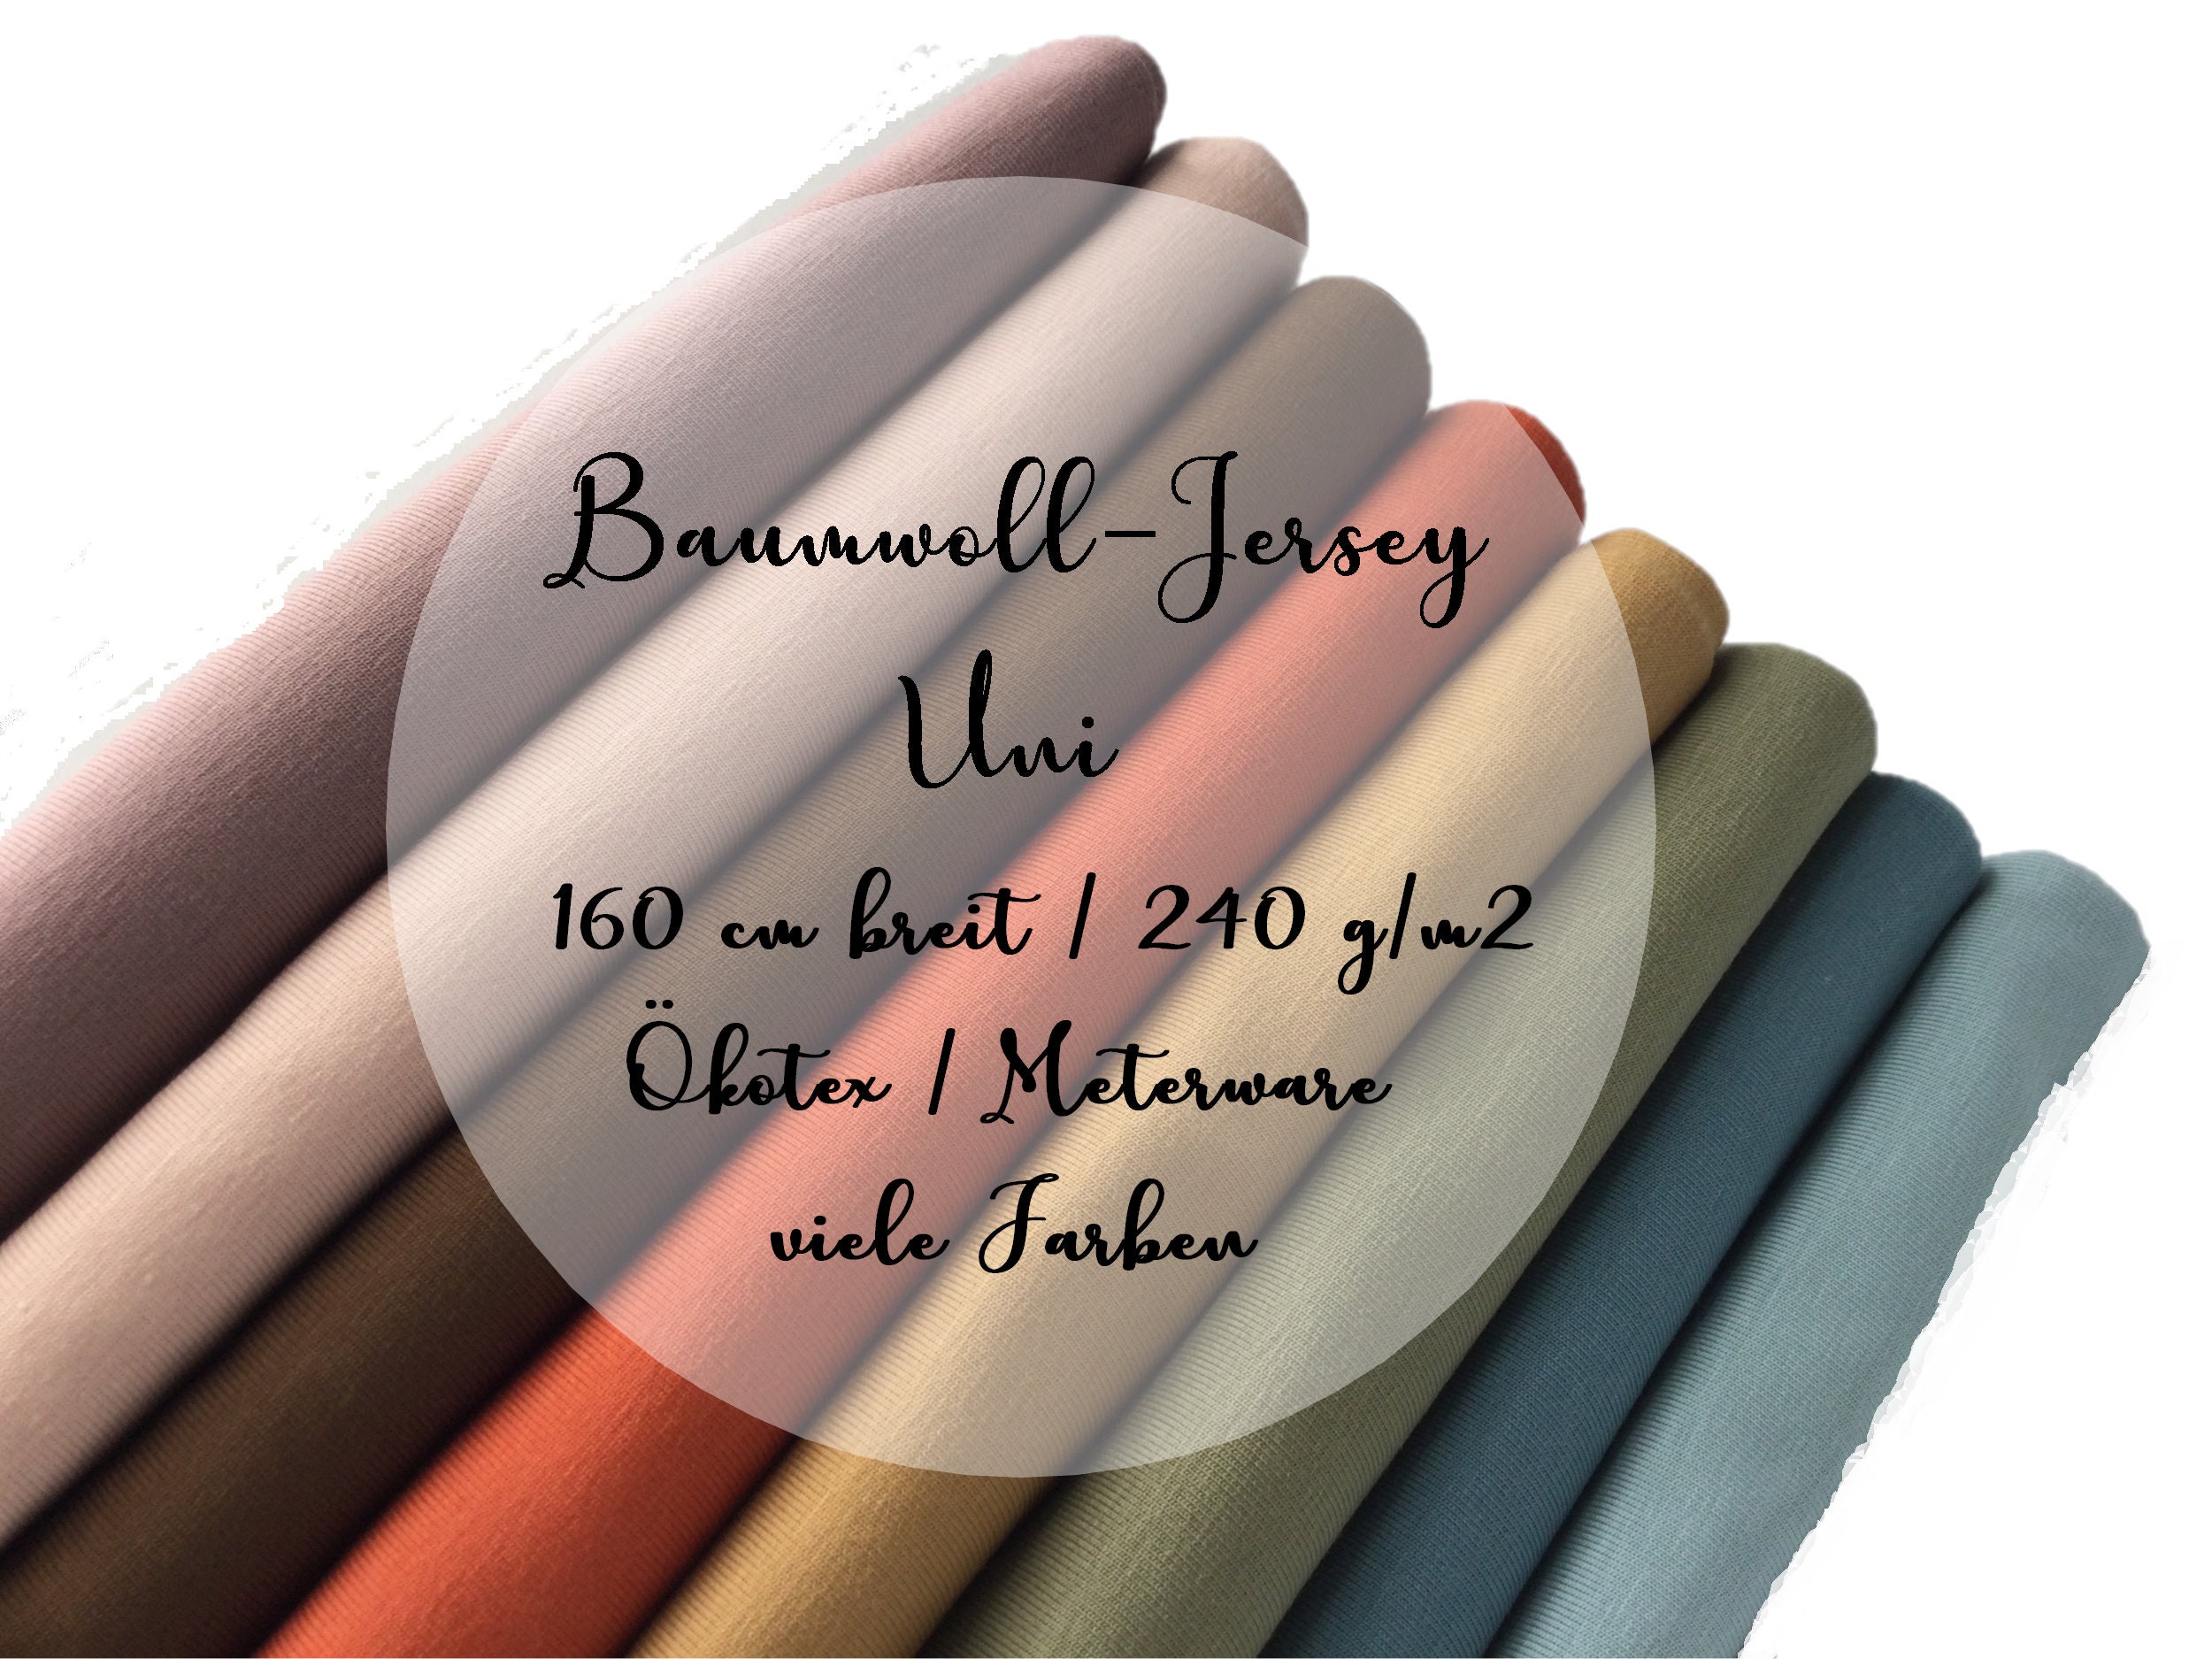 Buy Jersey, Uni Baumwolljersey 240 160 Breit Farben Online Viele G/m2 Etsy India in Cm Ökotex 